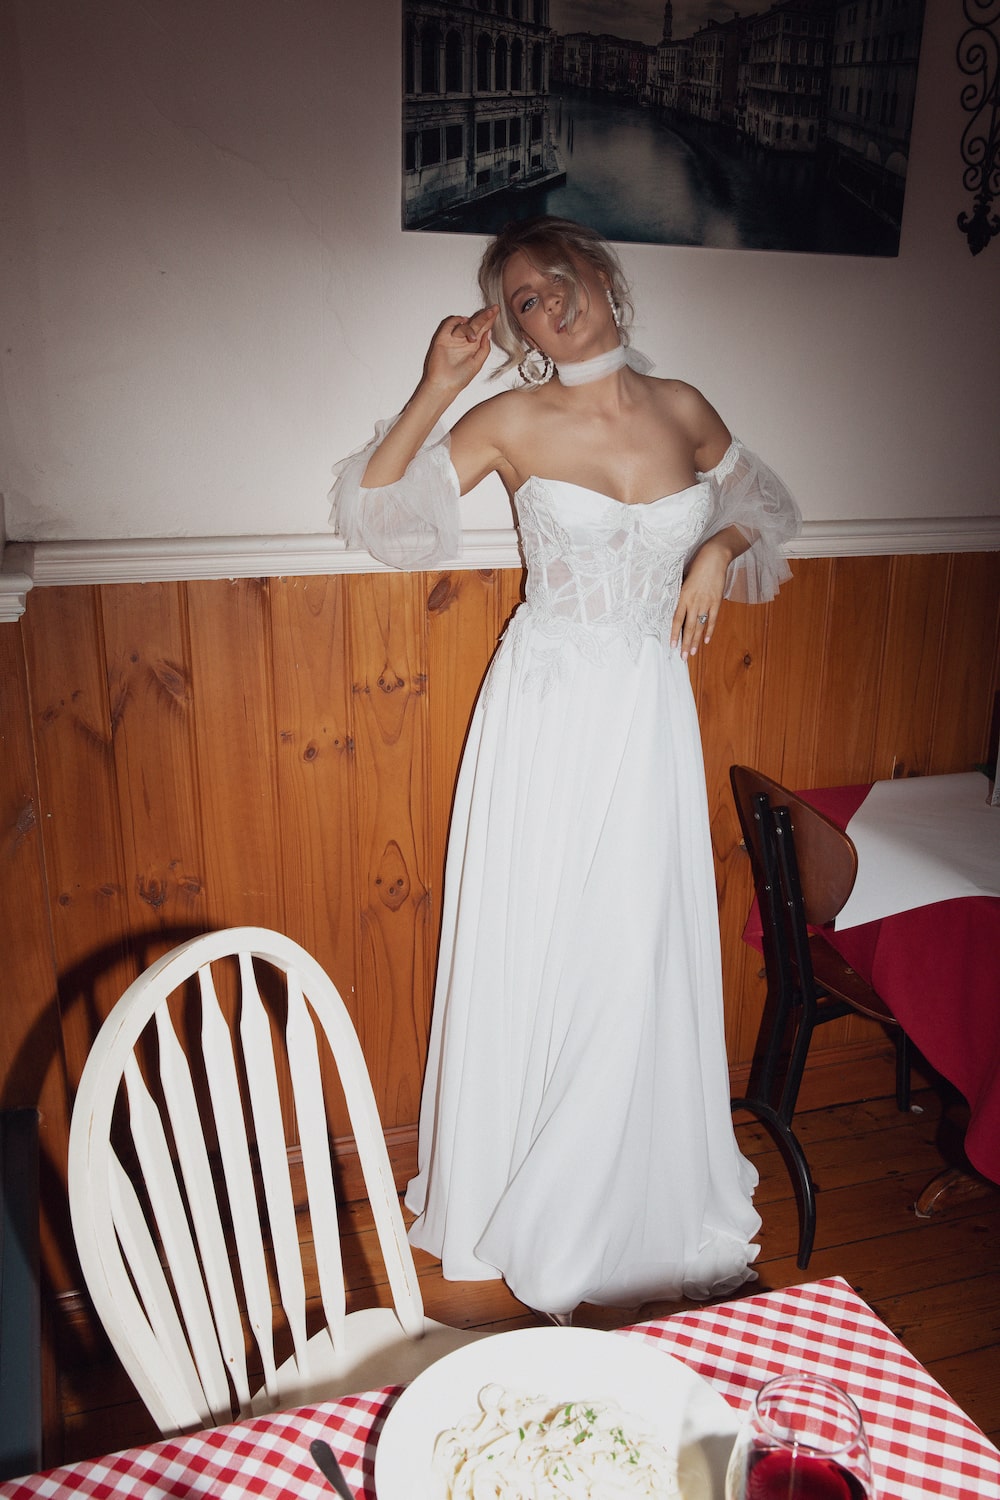 Model posing in italian cafe wearing the Giulietta gown.